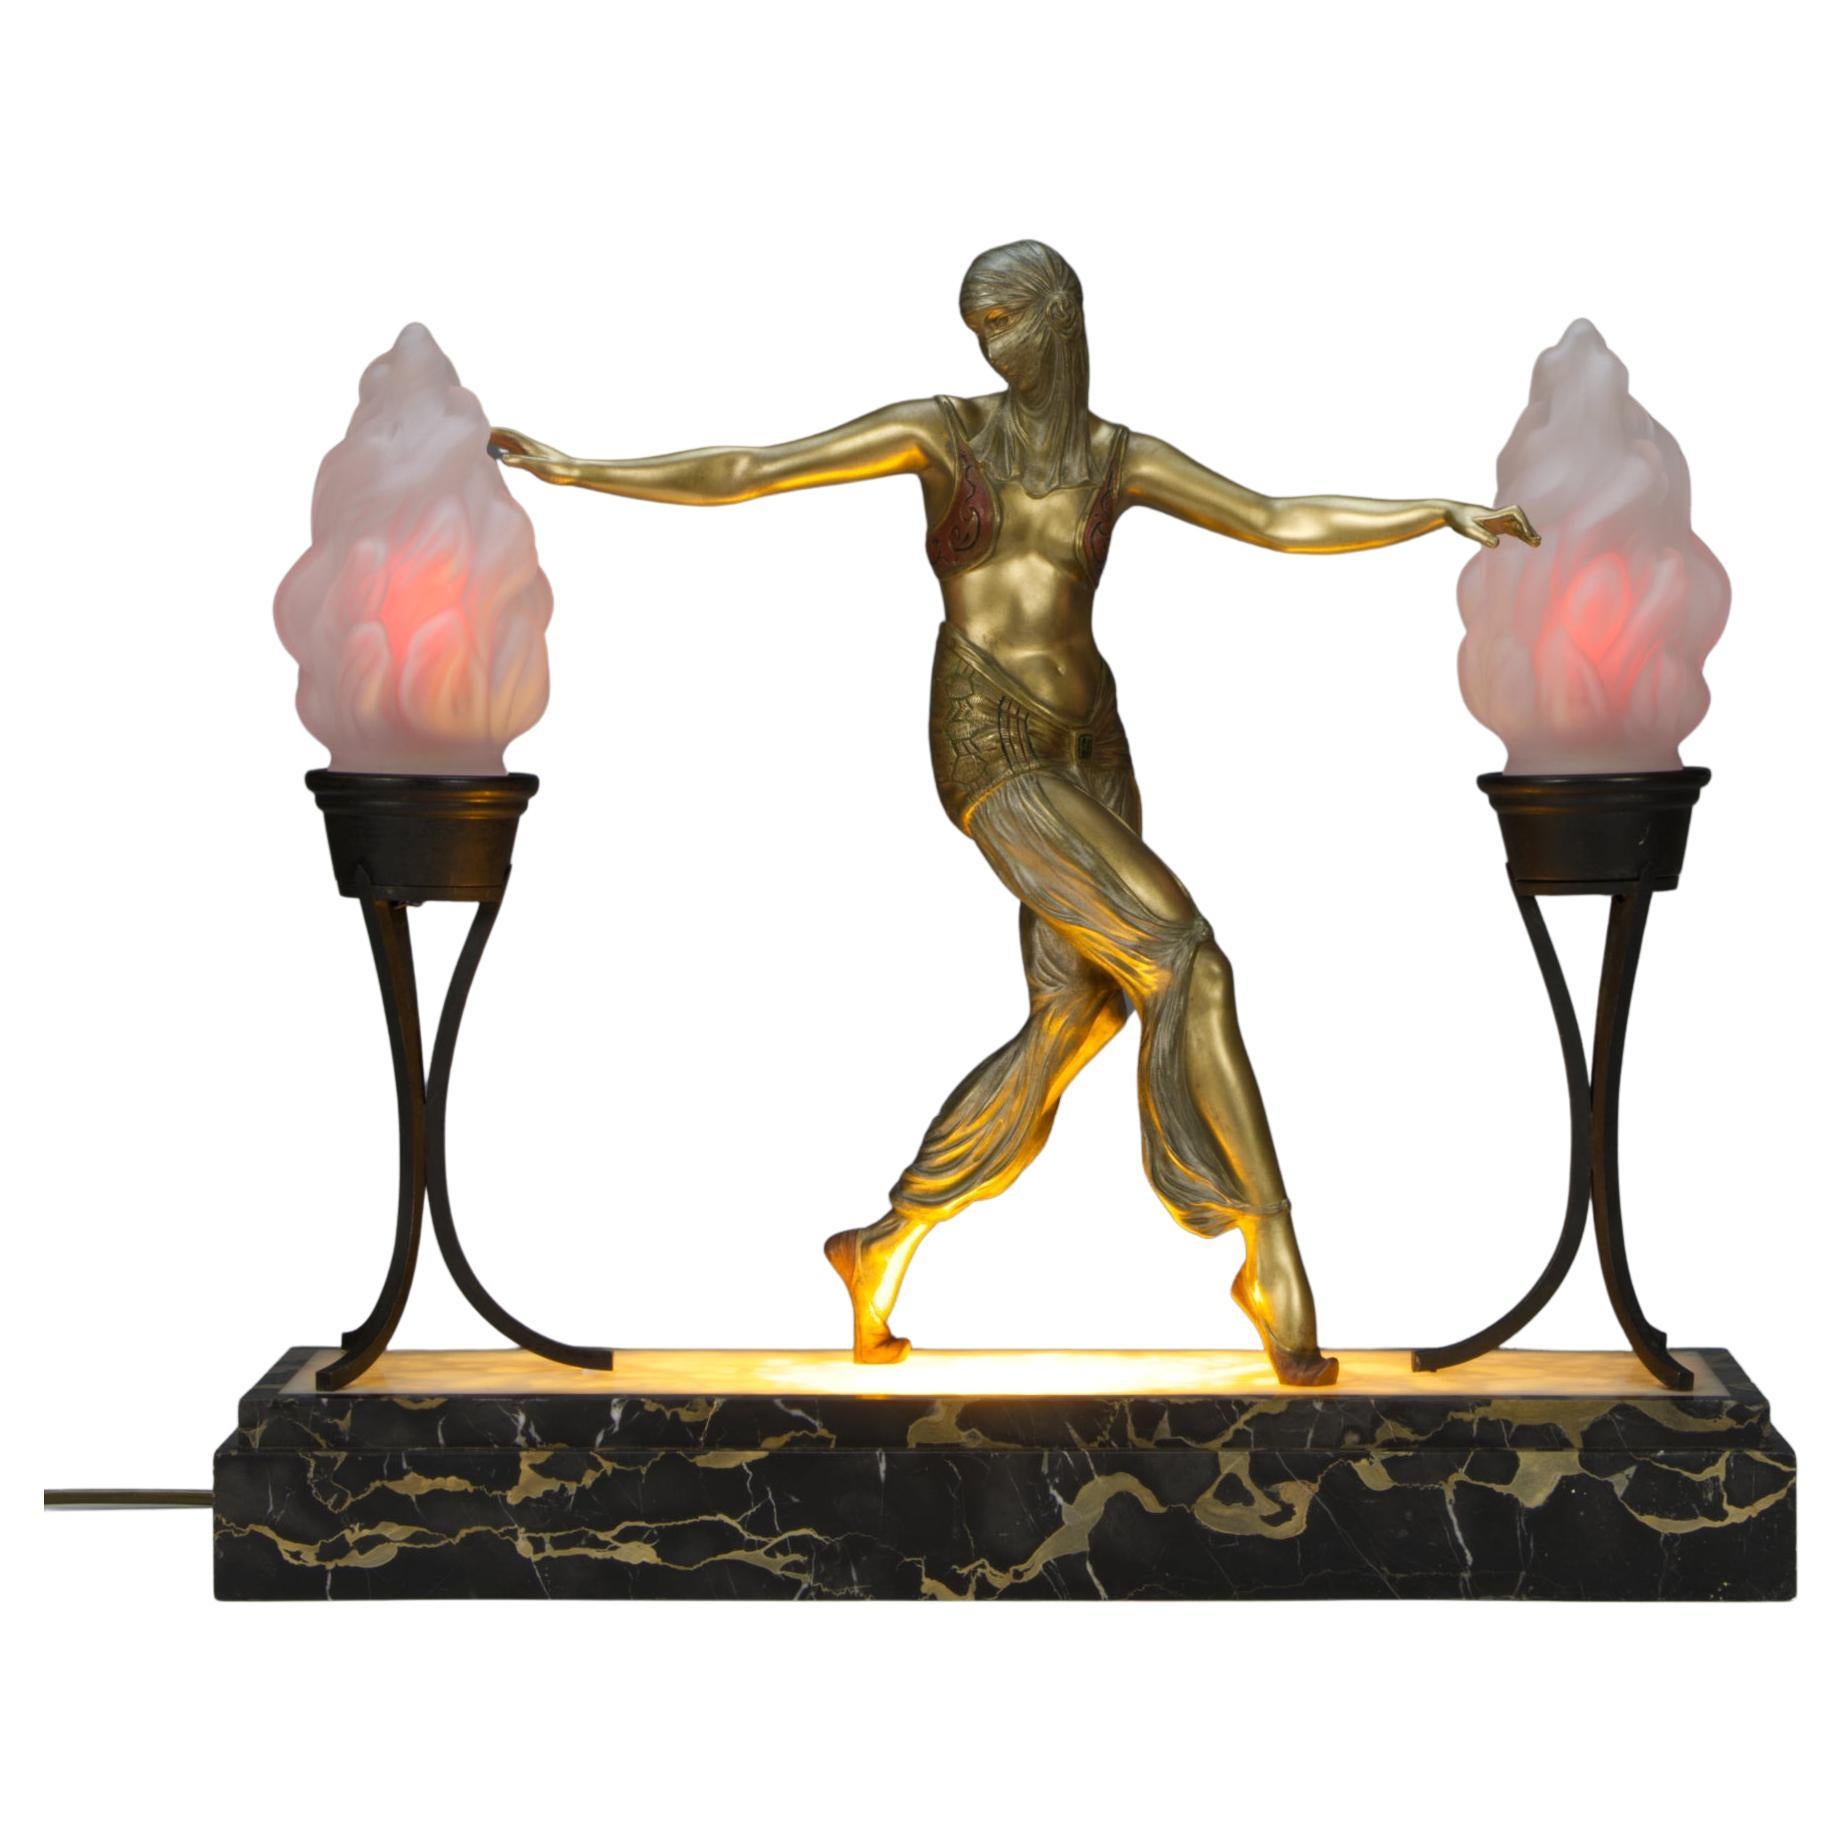 Pierre Le Faguays - An Art Deco Bronze Sculpture Lamp "Fille de Harem"